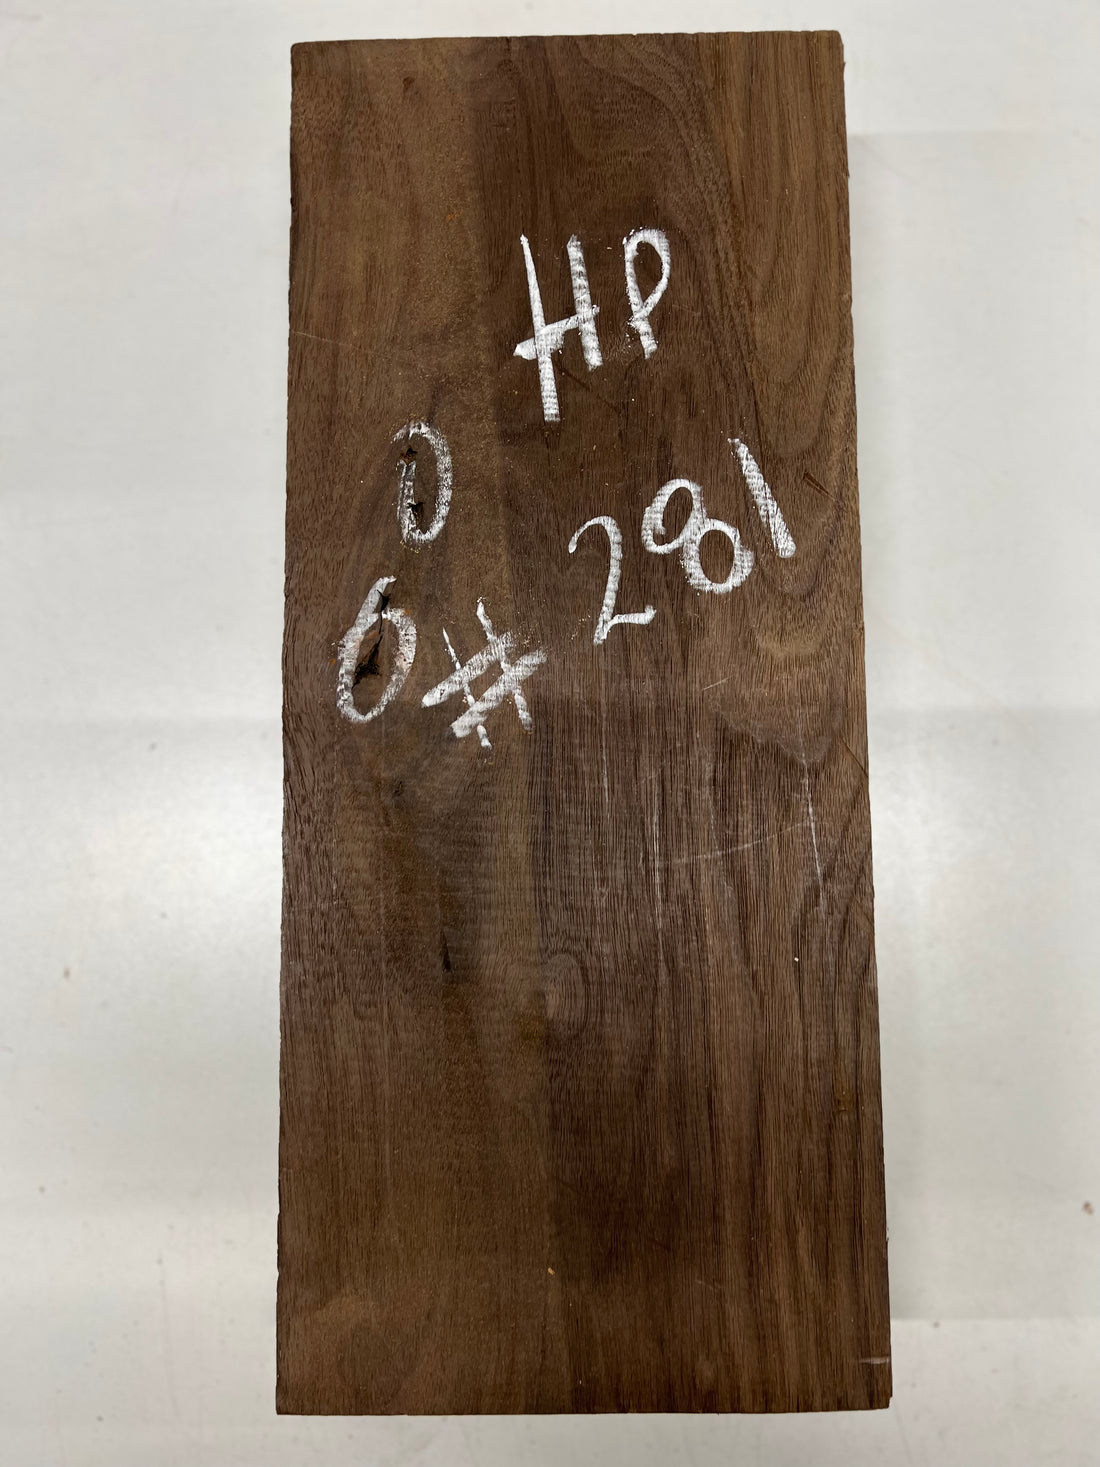 Black Walnut Lumber Board Wood Blank 18&quot;x 7-3/4&quot;x 3&quot;